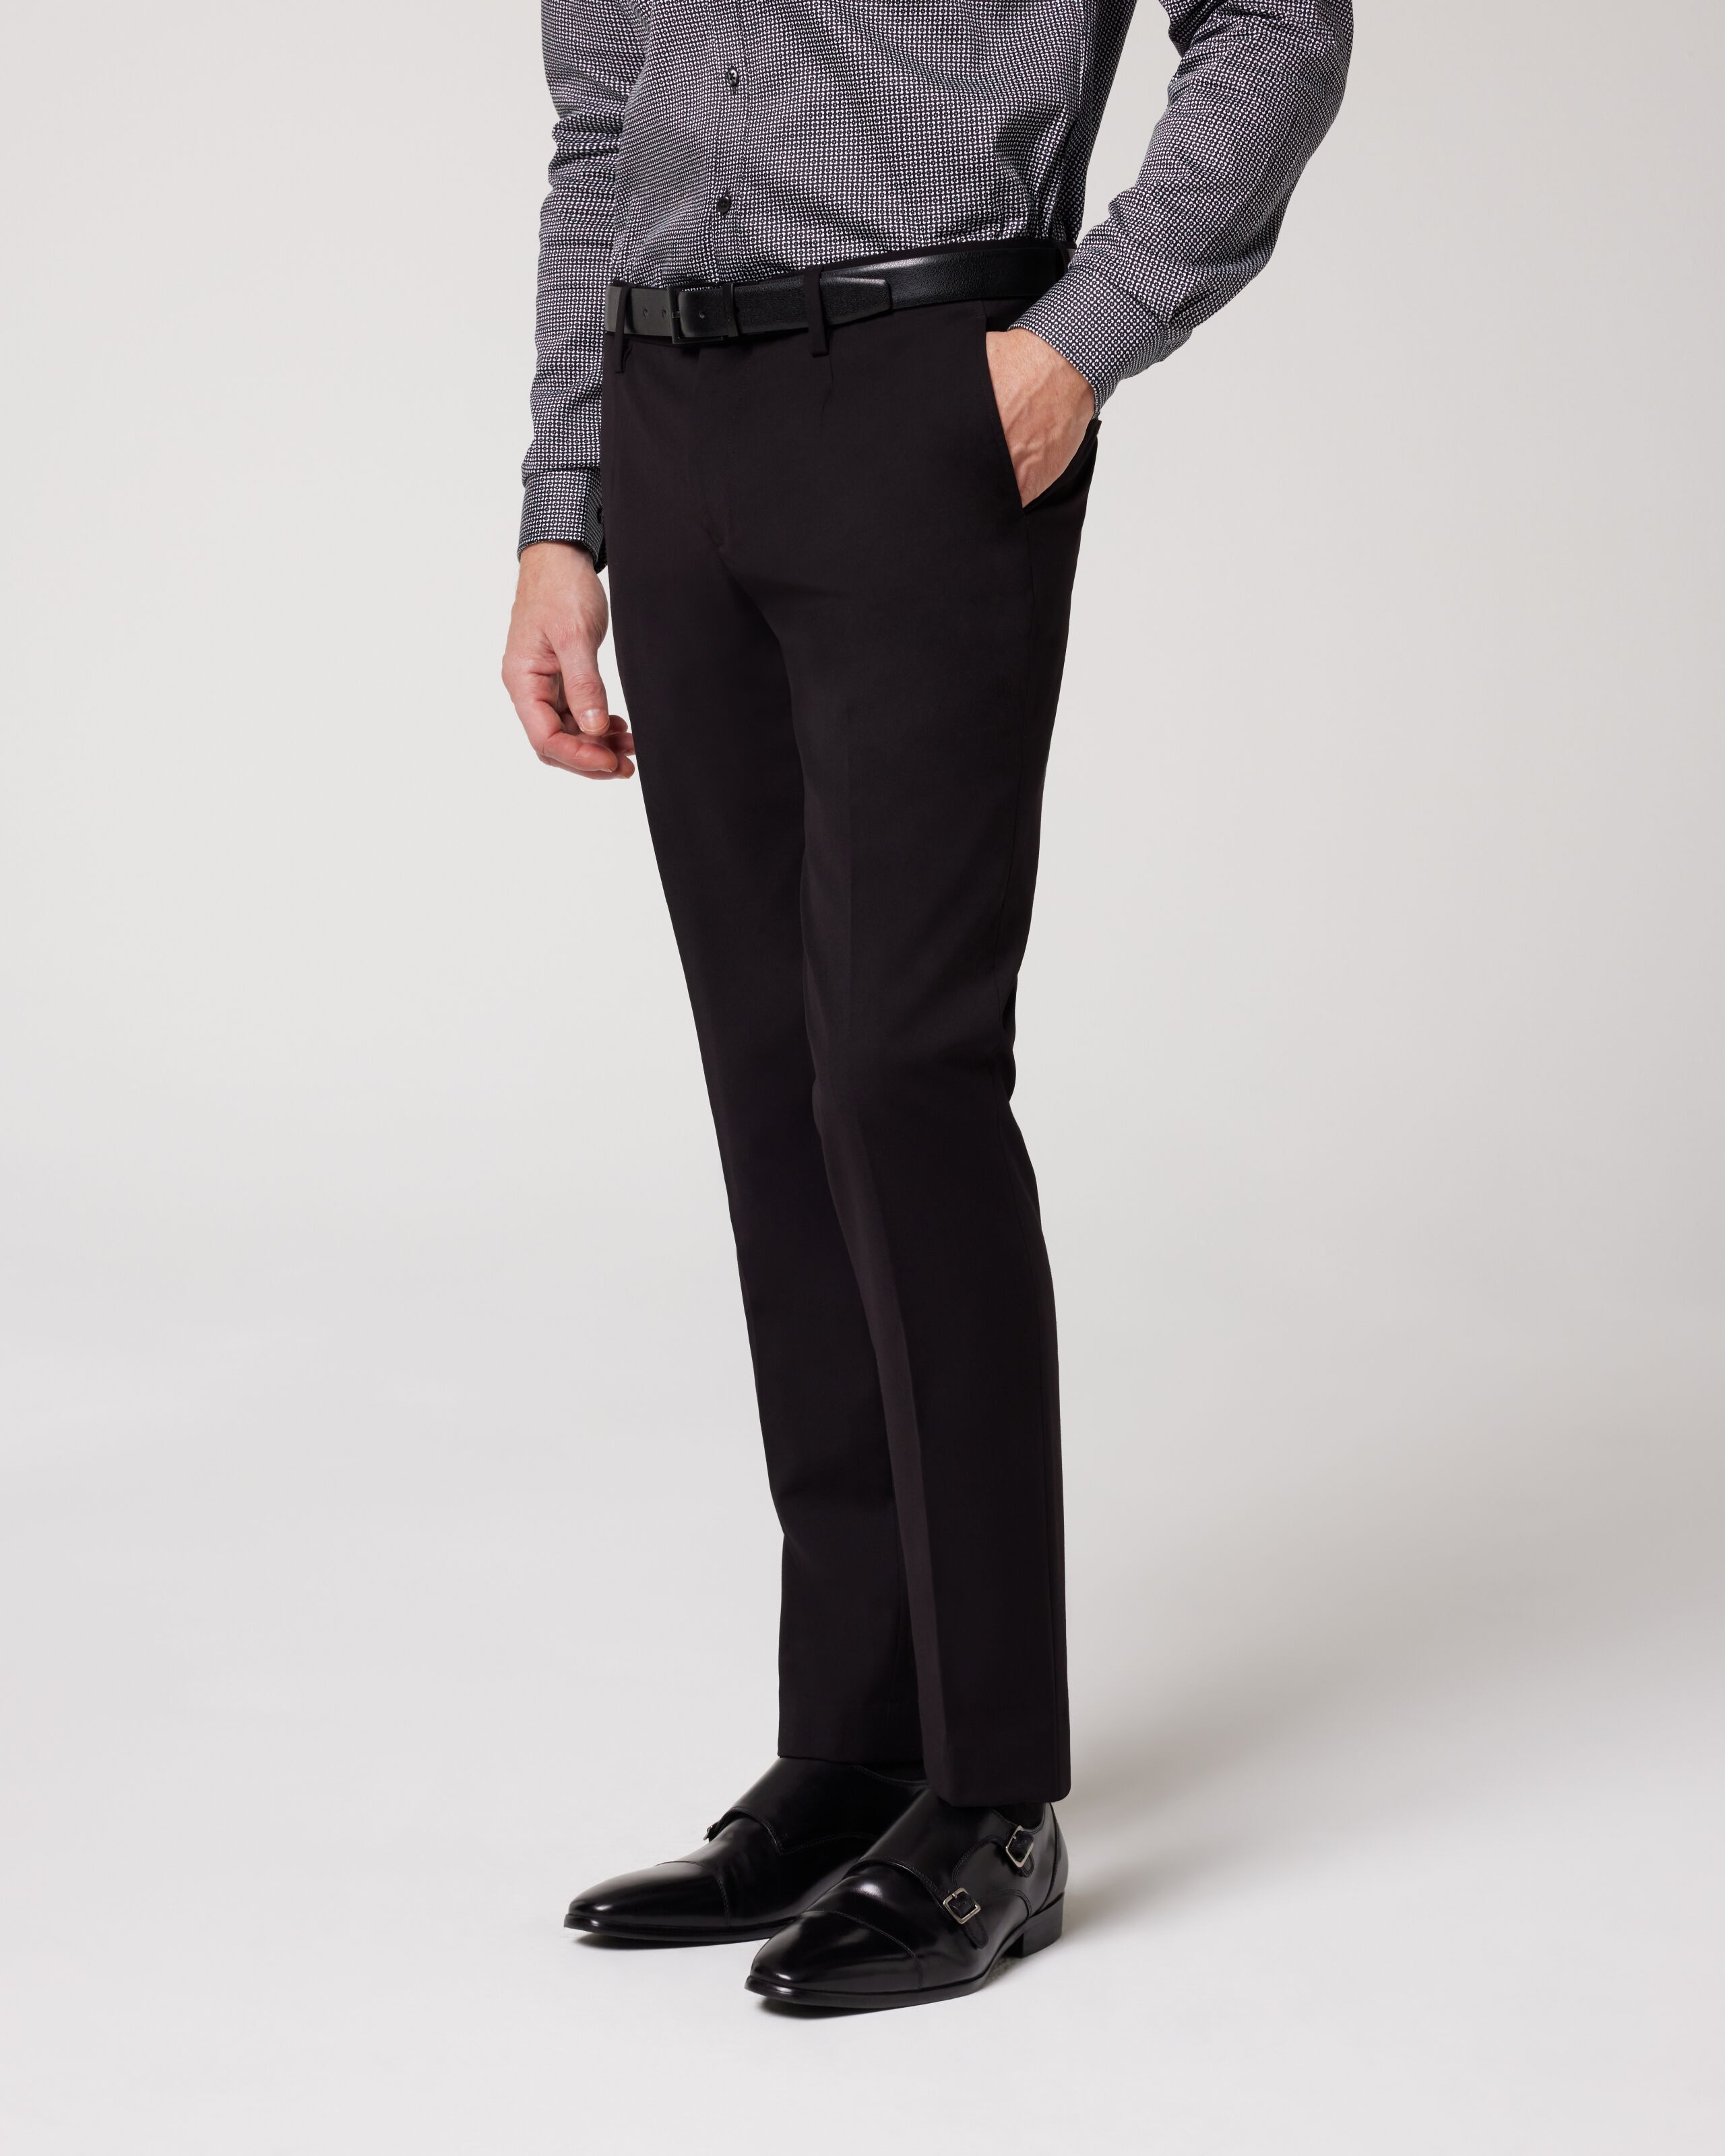 Black Suits For Men Men's Suit Slim 2 Piece Suit Business Wedding Party  Jacket Vest & Pants Coat - Walmart.com